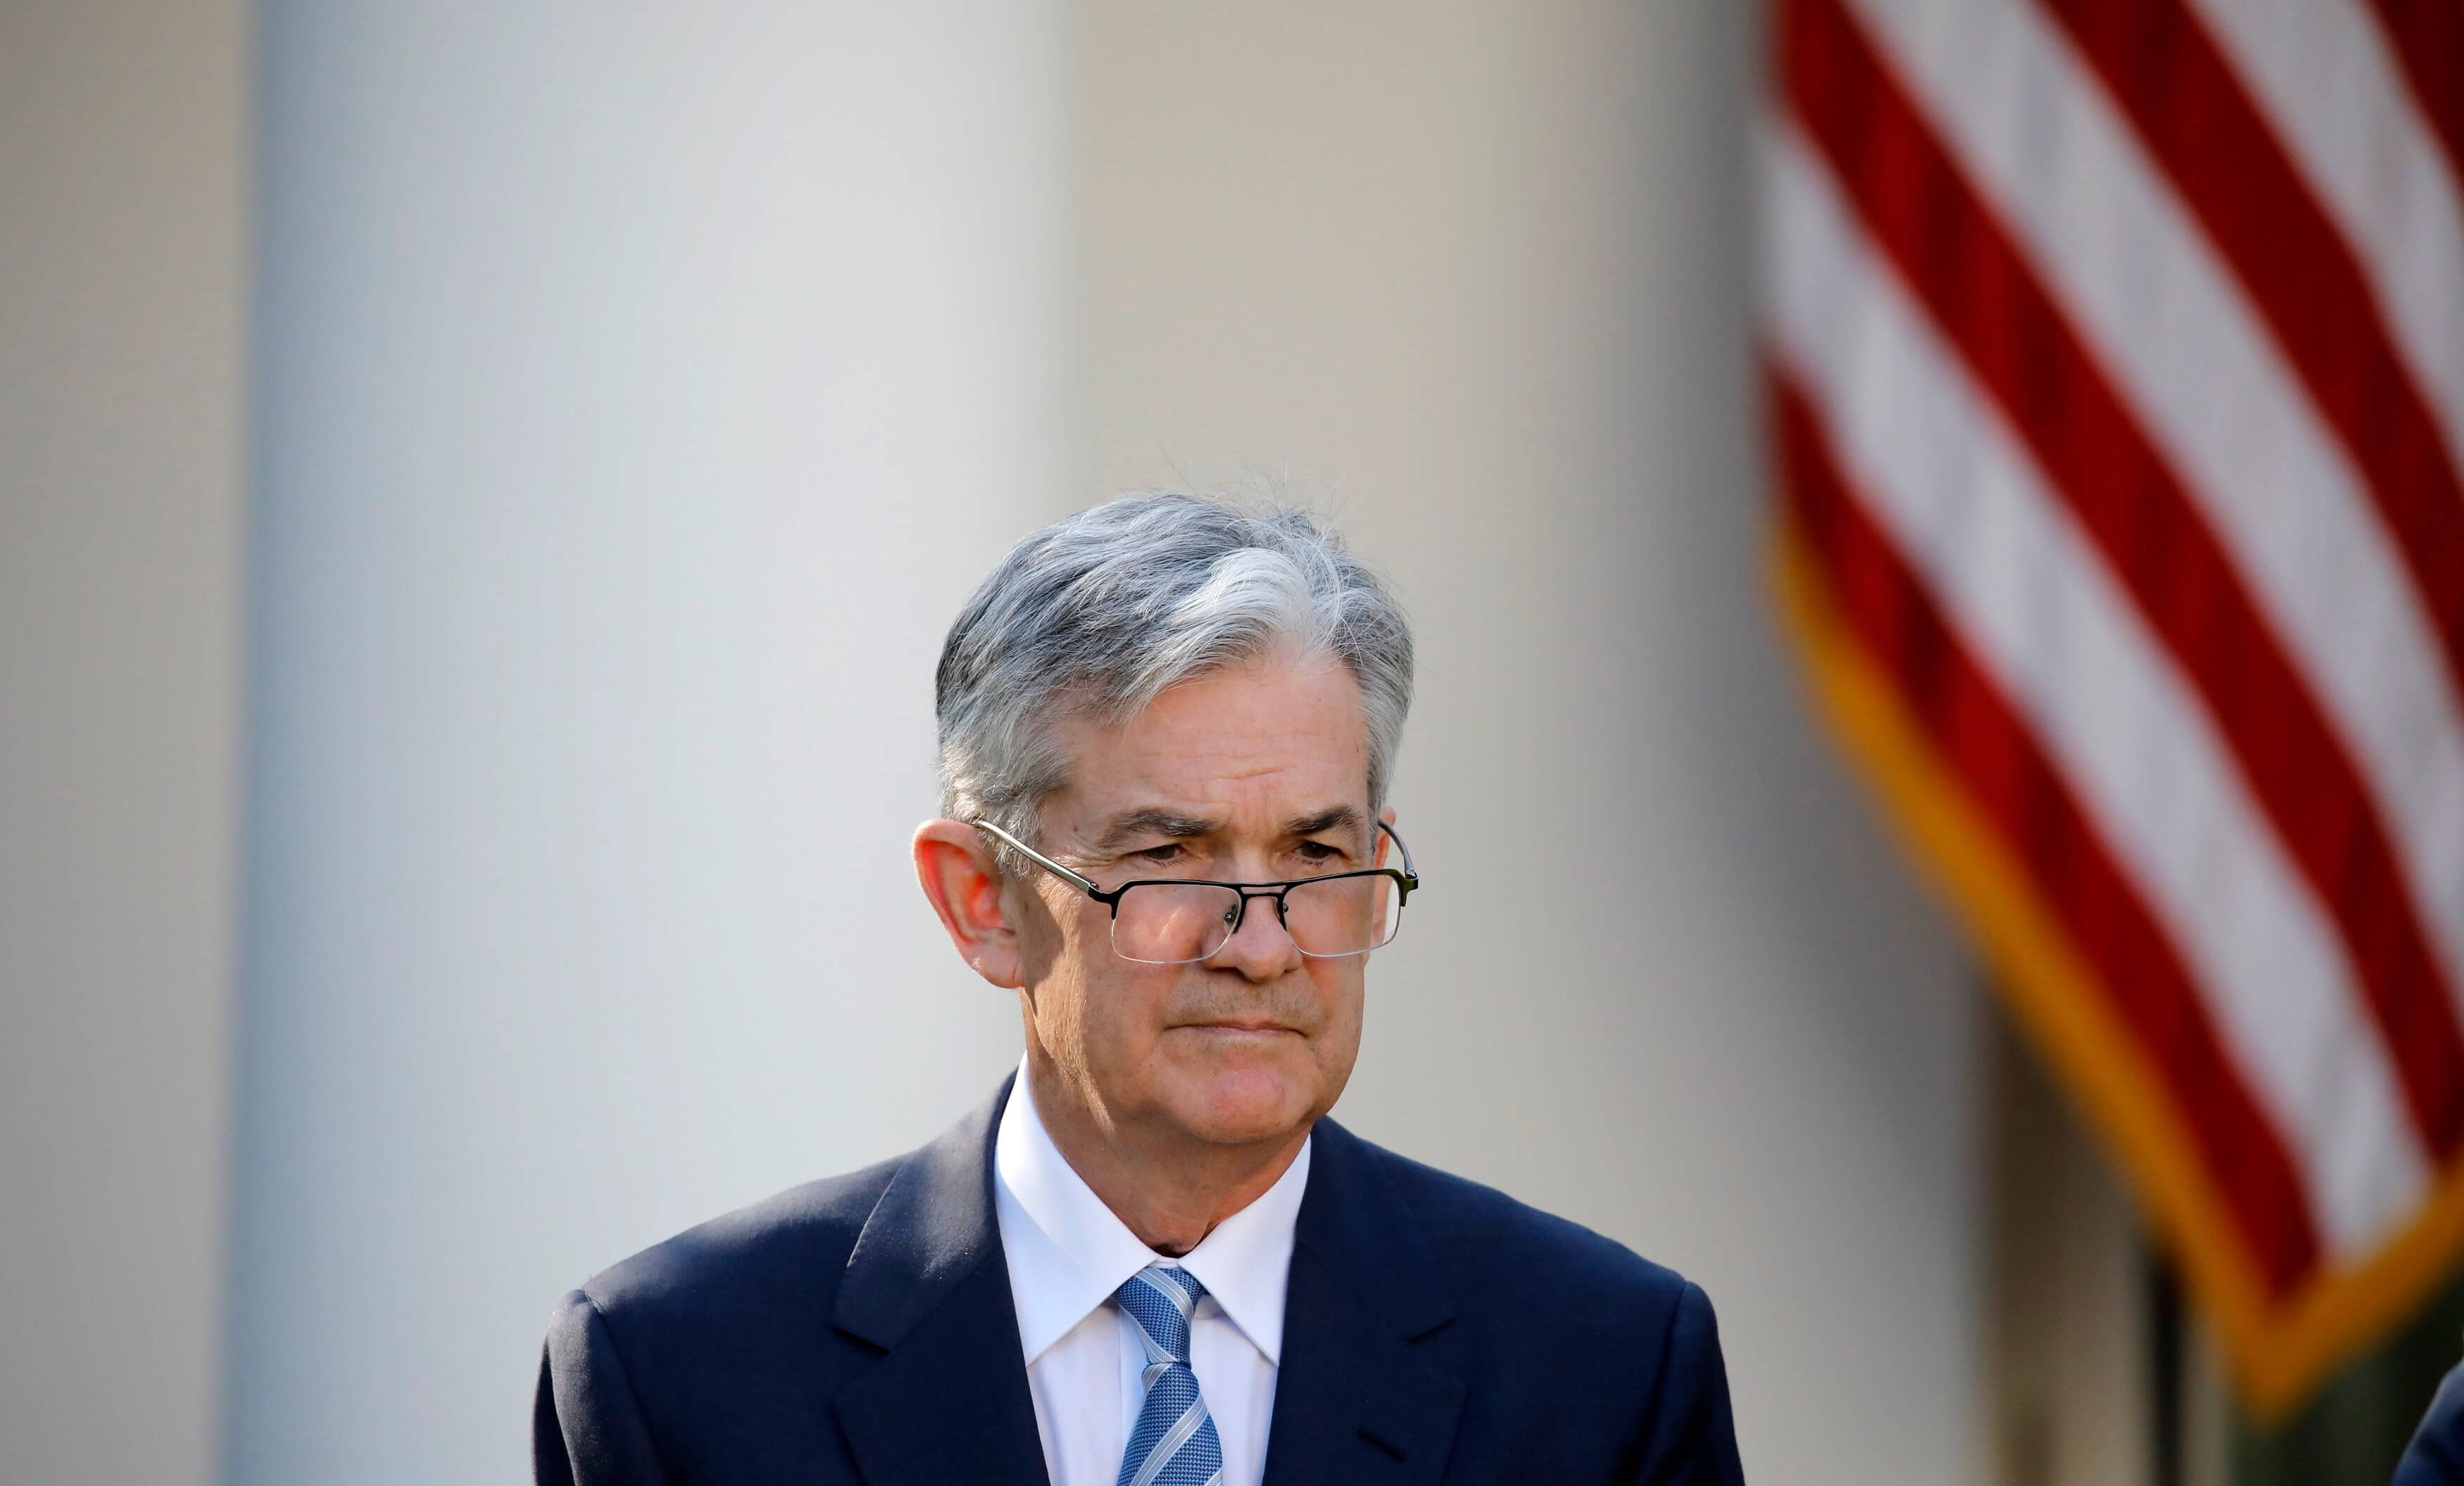 Presentación de Powell en Congreso inicia cambio en la Fed